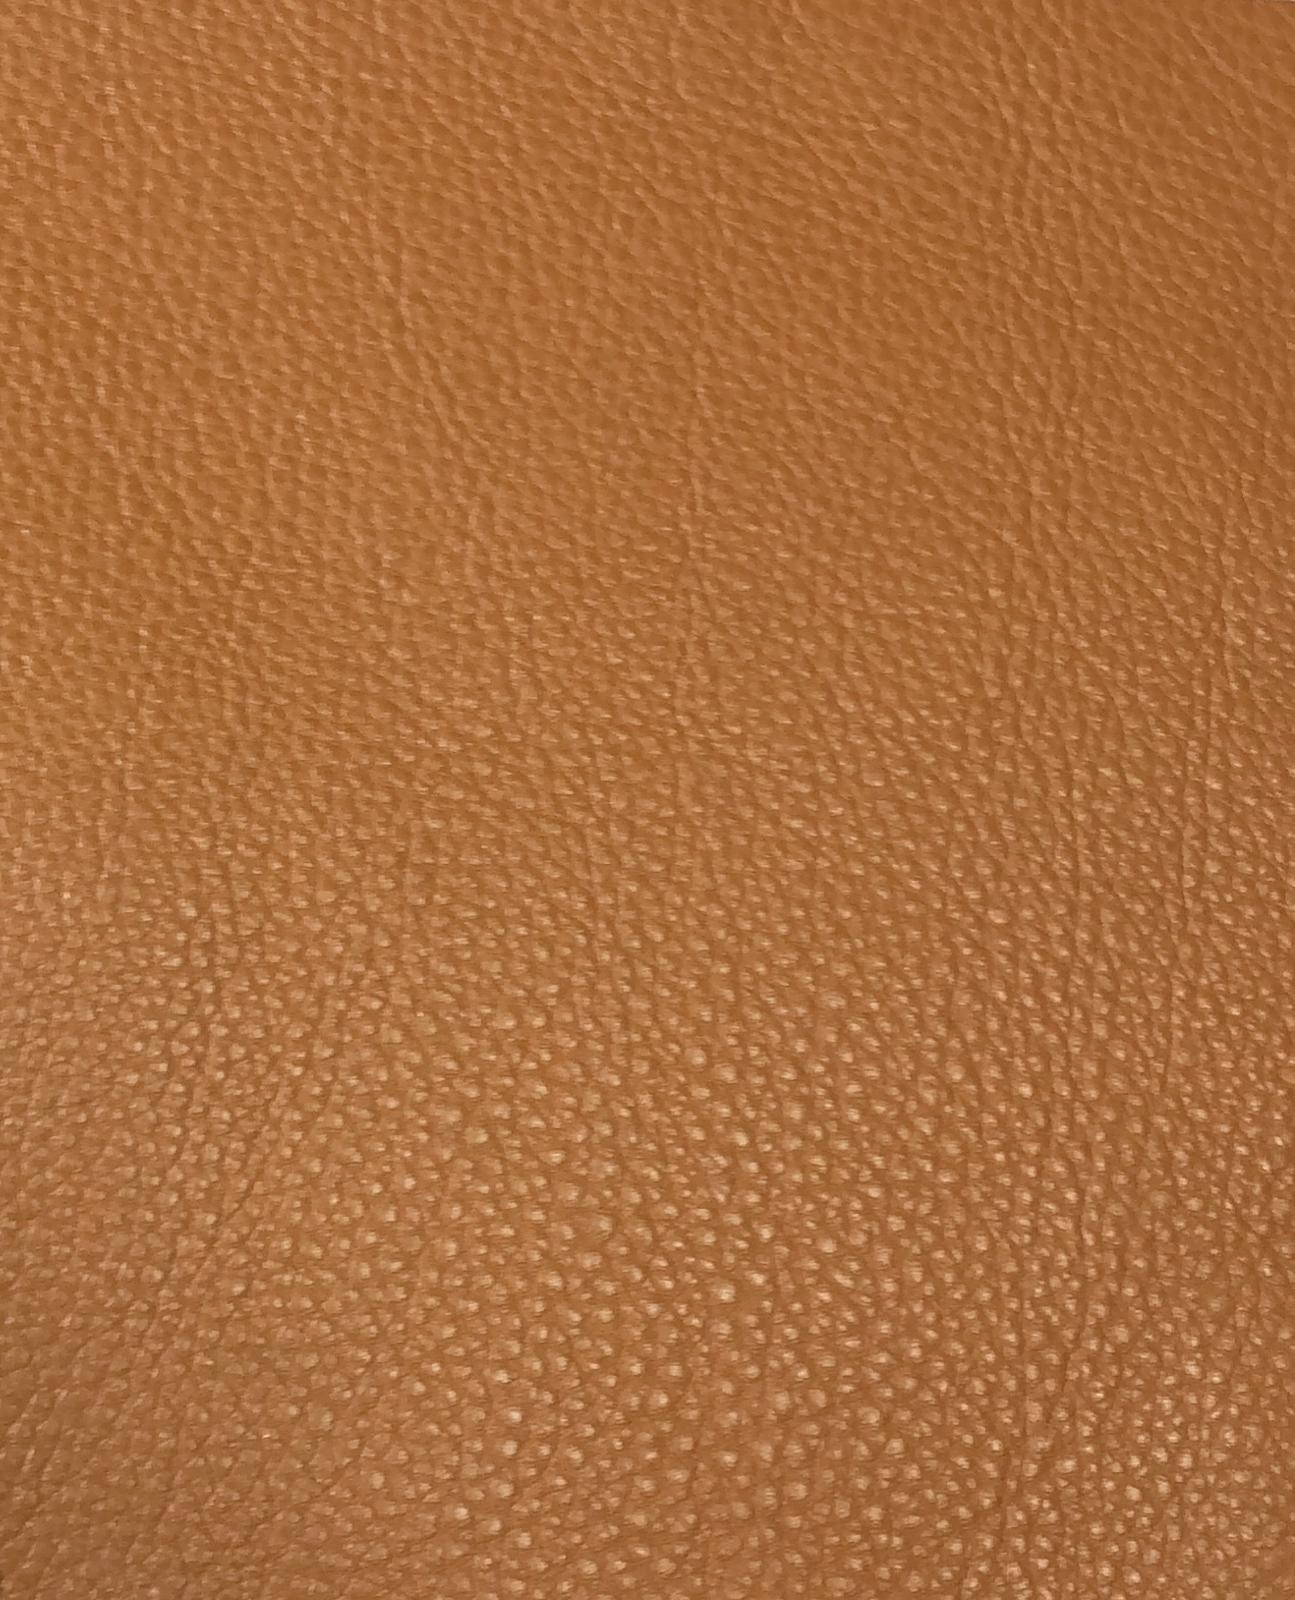 07303 Tan Leather